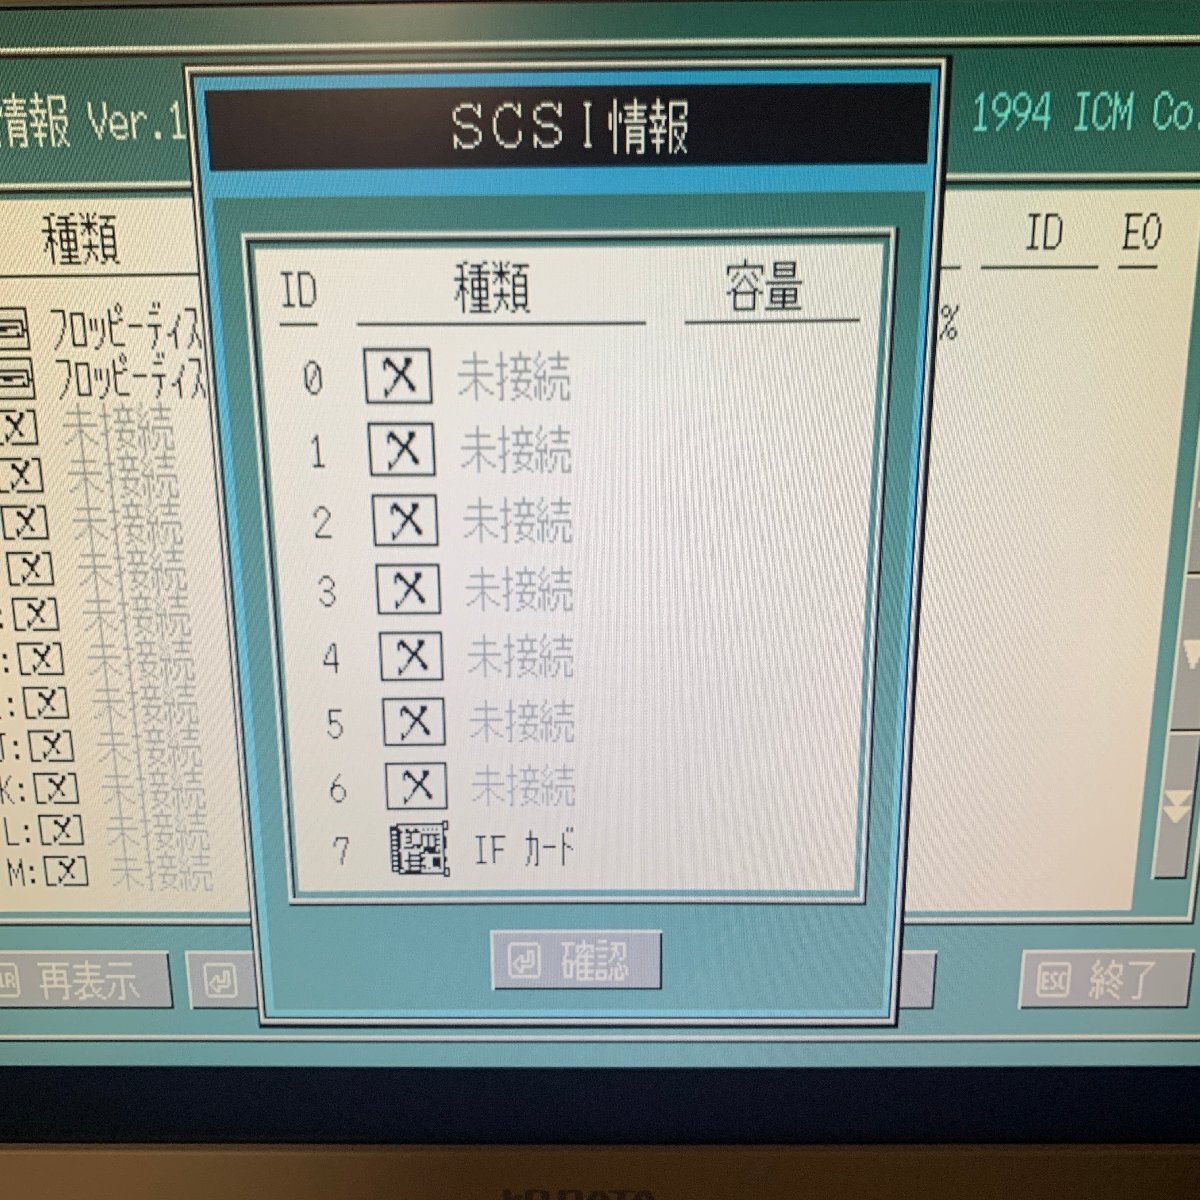 K663 NEC PC-9821A-E10 A-MATE для SCSI панель мойка, чистка, рабочее состояние подтверждено 